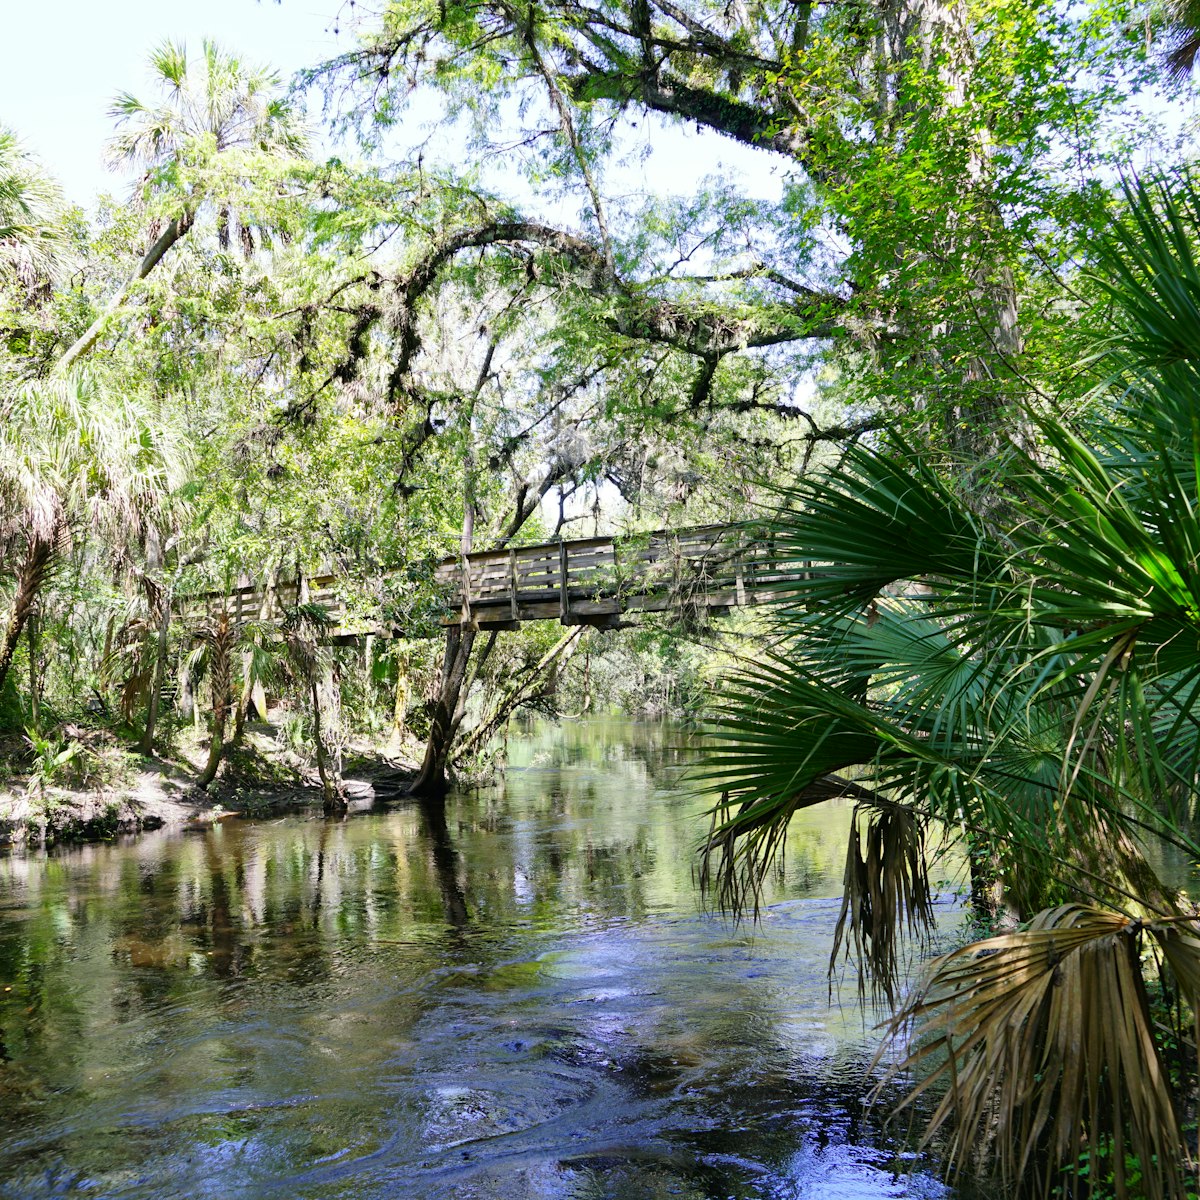 Hillsborough river state park at Tampa, Florida.